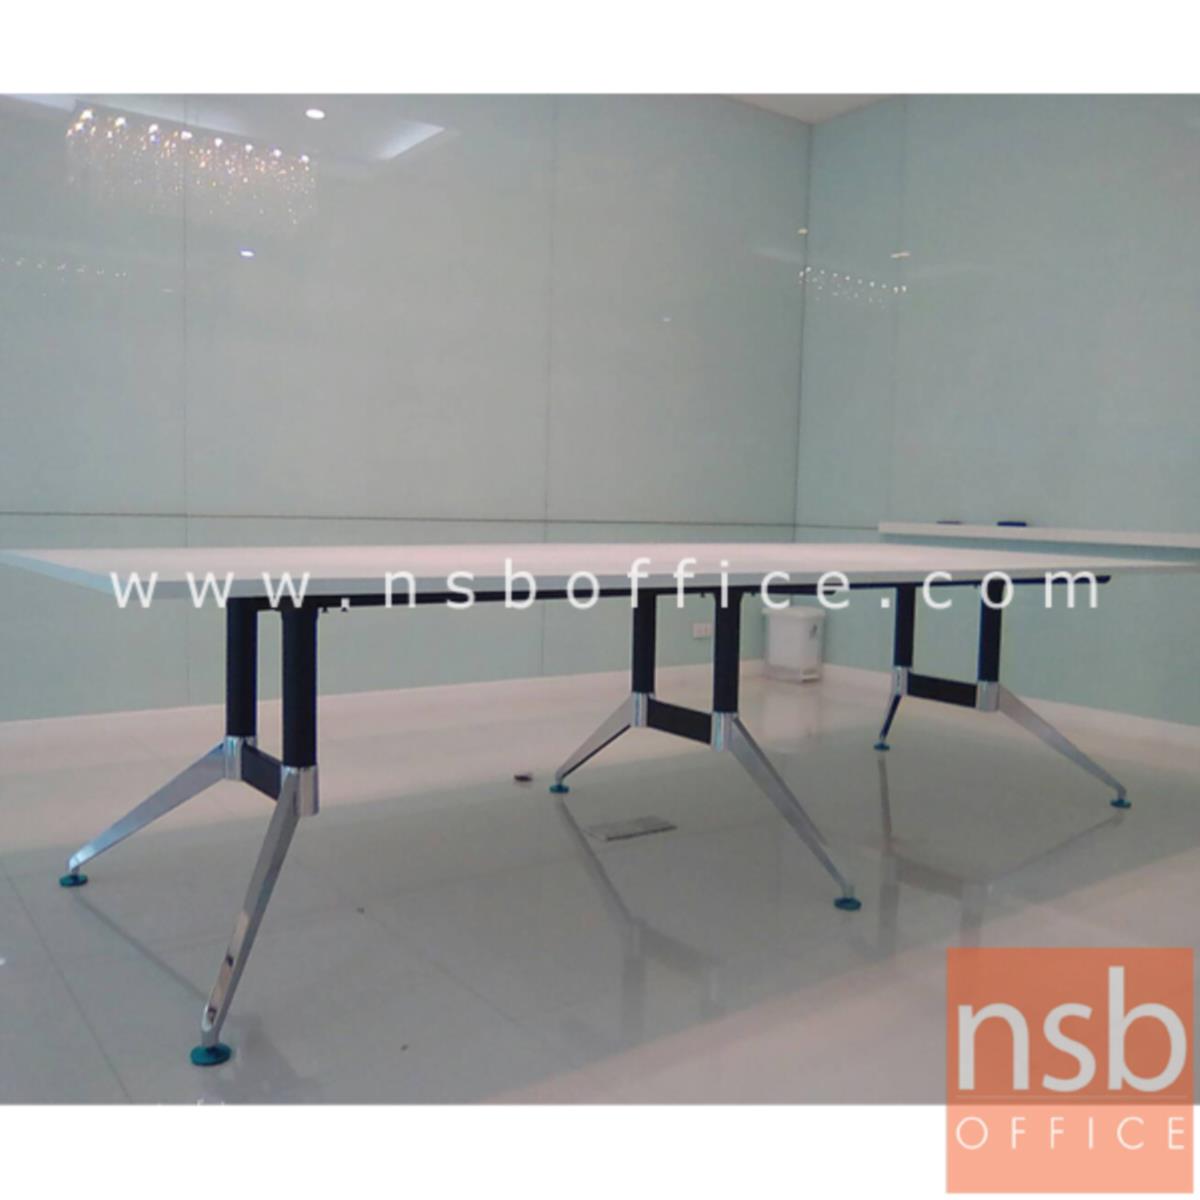 โต๊ะประชุมทรงสี่เหลี่ยม  รุ่น Finch (ฟินช์) ขนาด 360W, 480W cm.  ขาเหล็กทรงหางปลา